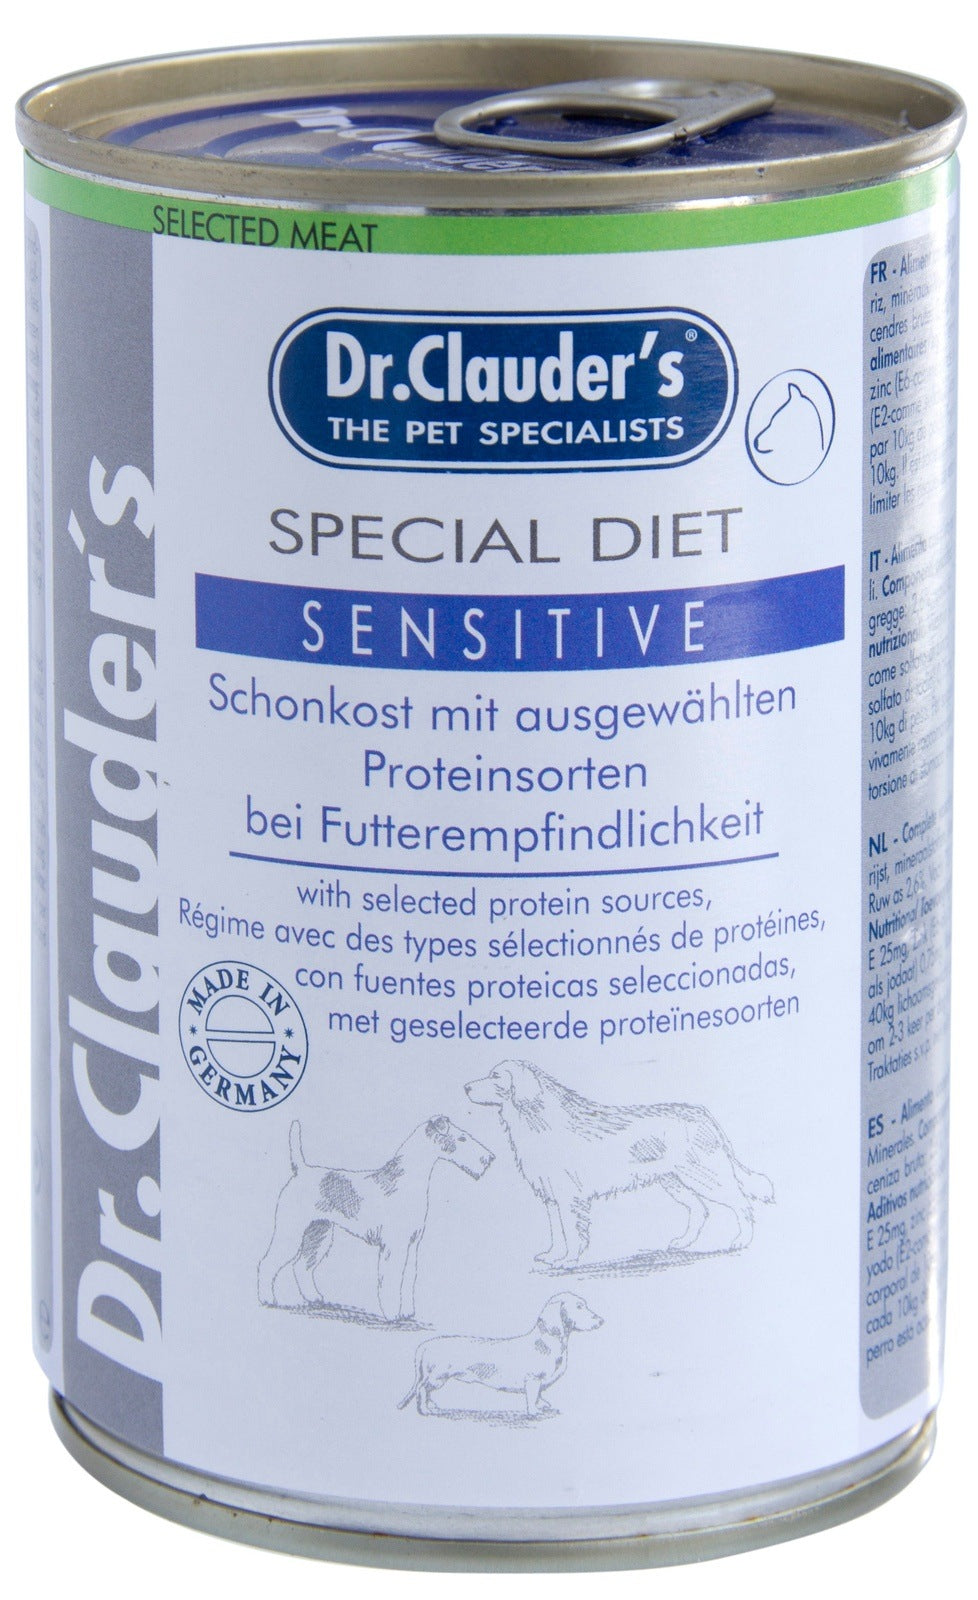 Artikel mit dem Namen Dr.Clauder's Special Diet Sensitive im Shop von zoo.de , dem Onlineshop für nachhaltiges Hundefutter und Katzenfutter.